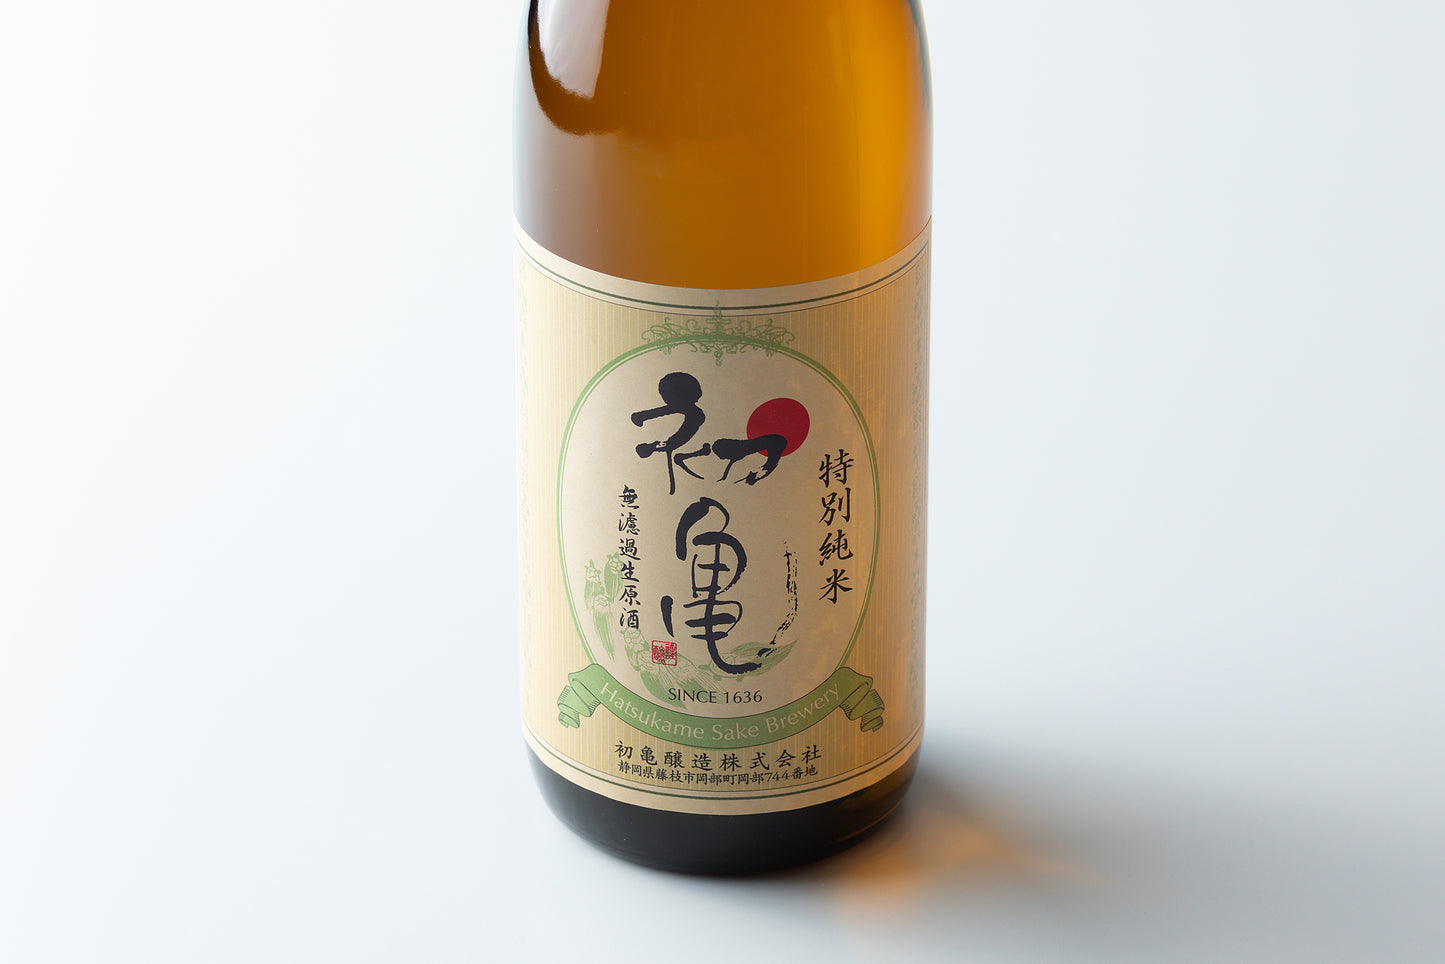 【完全受注生産品・3月9日発売予定】初亀 特別純米 無濾過生原酒